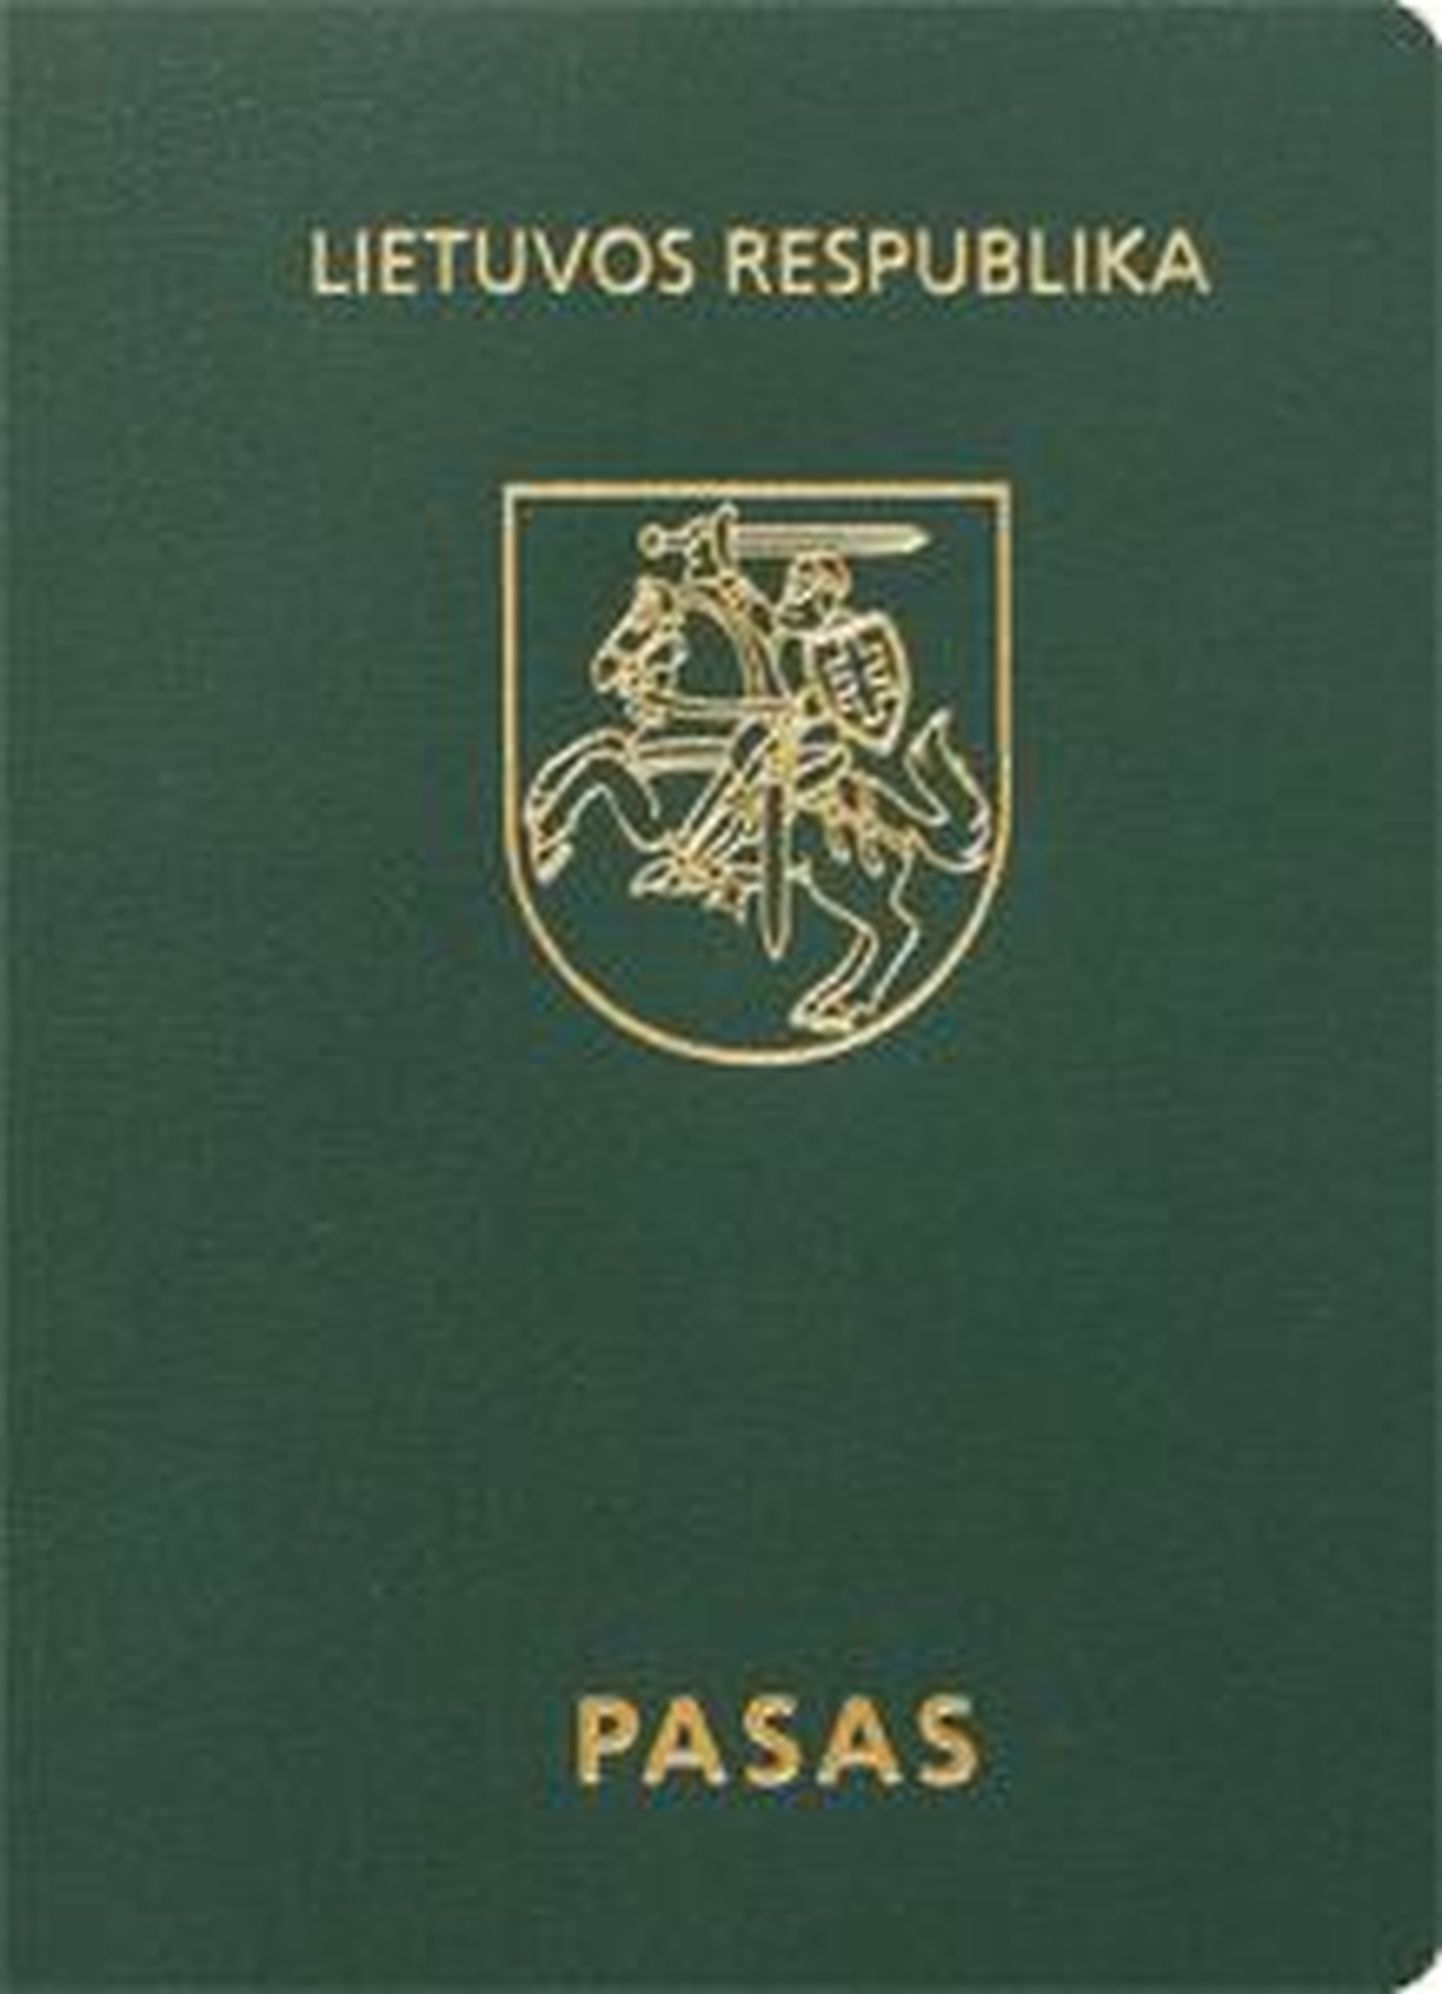 Leedu pass